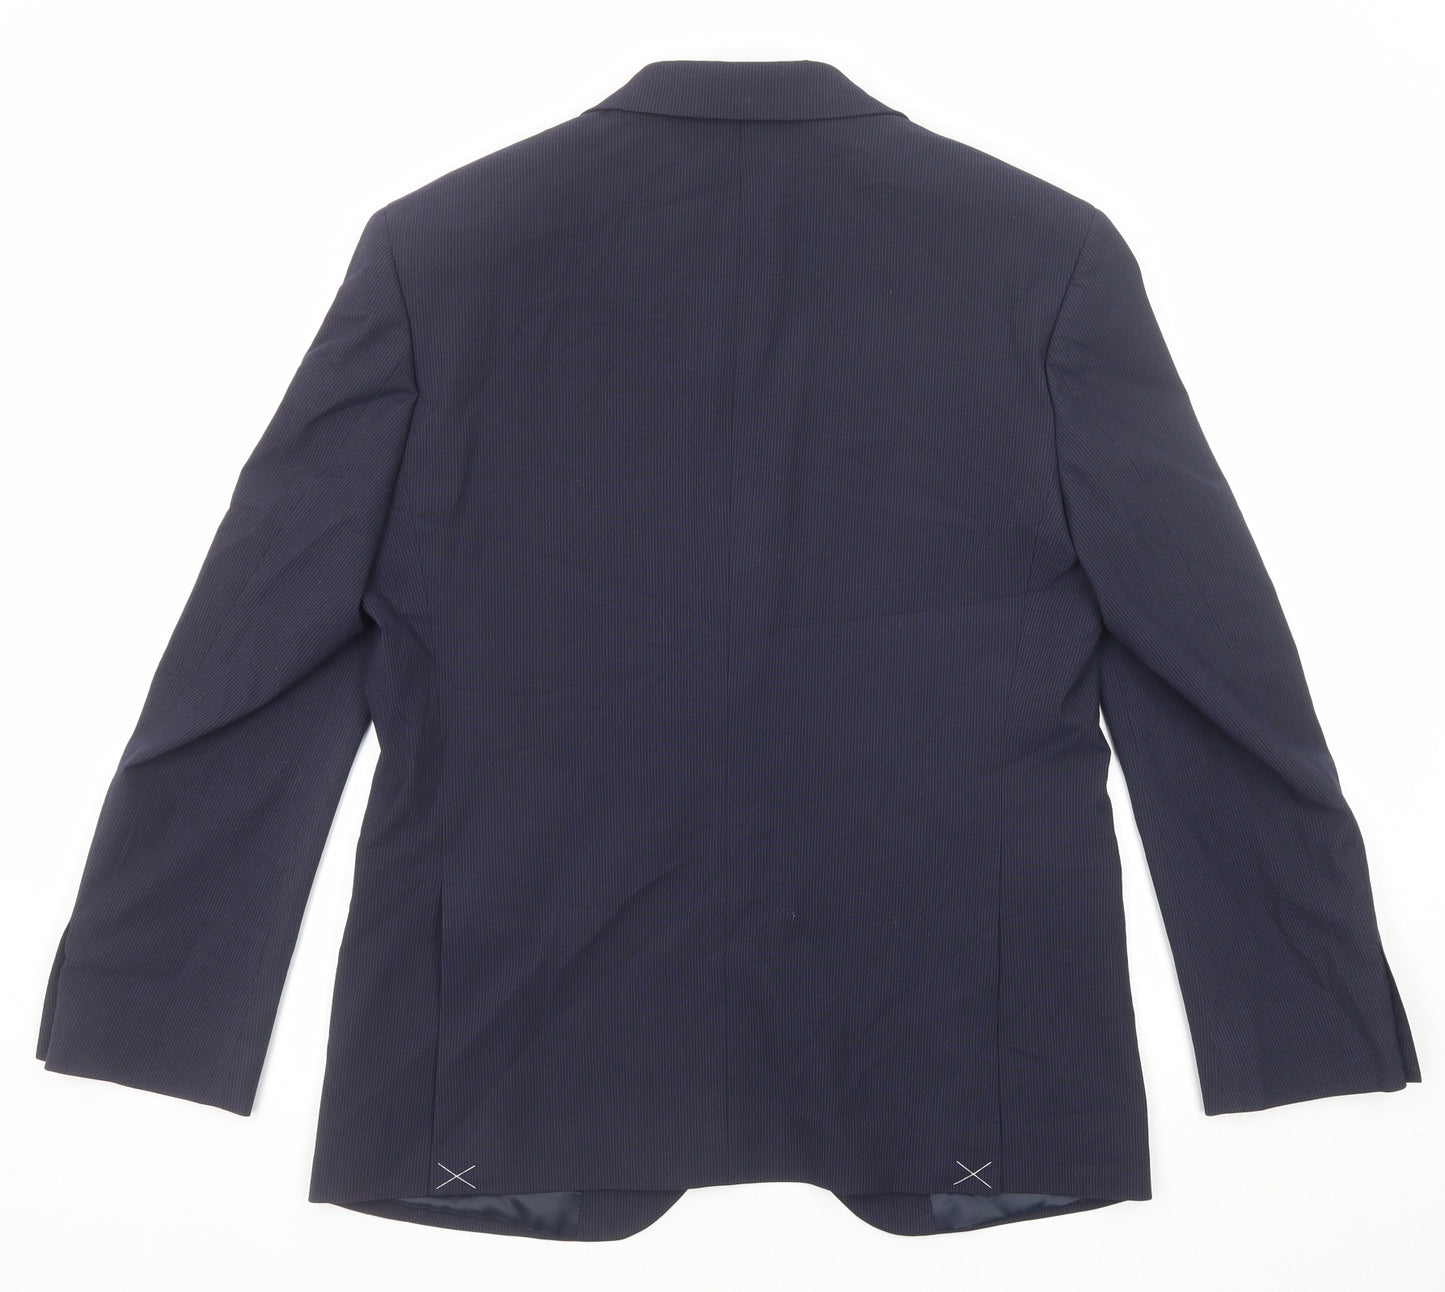 Marks and Spencer Mens Blue Striped Polyester Jacket Suit Jacket Size 38 Regular